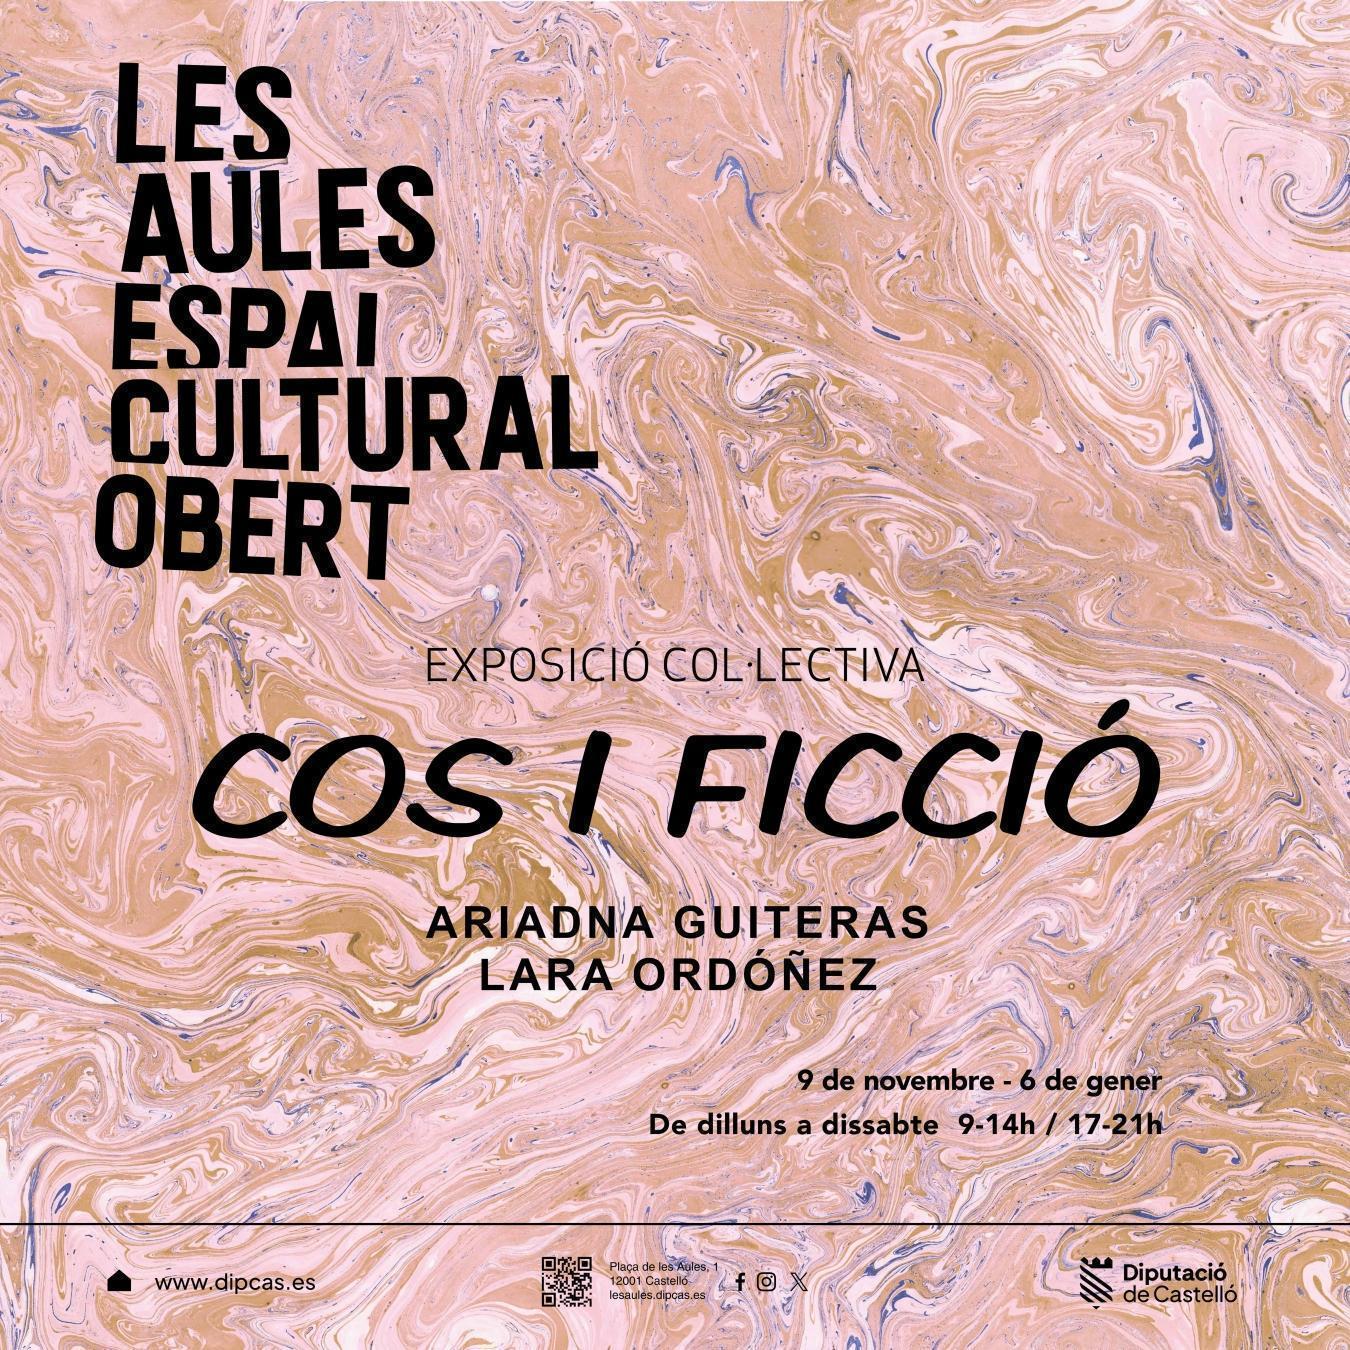 ‘Cos i ficció’ tanca l'any expositiu en l'Espai Cultural Obert Les Aules de la Diputació de Castelló